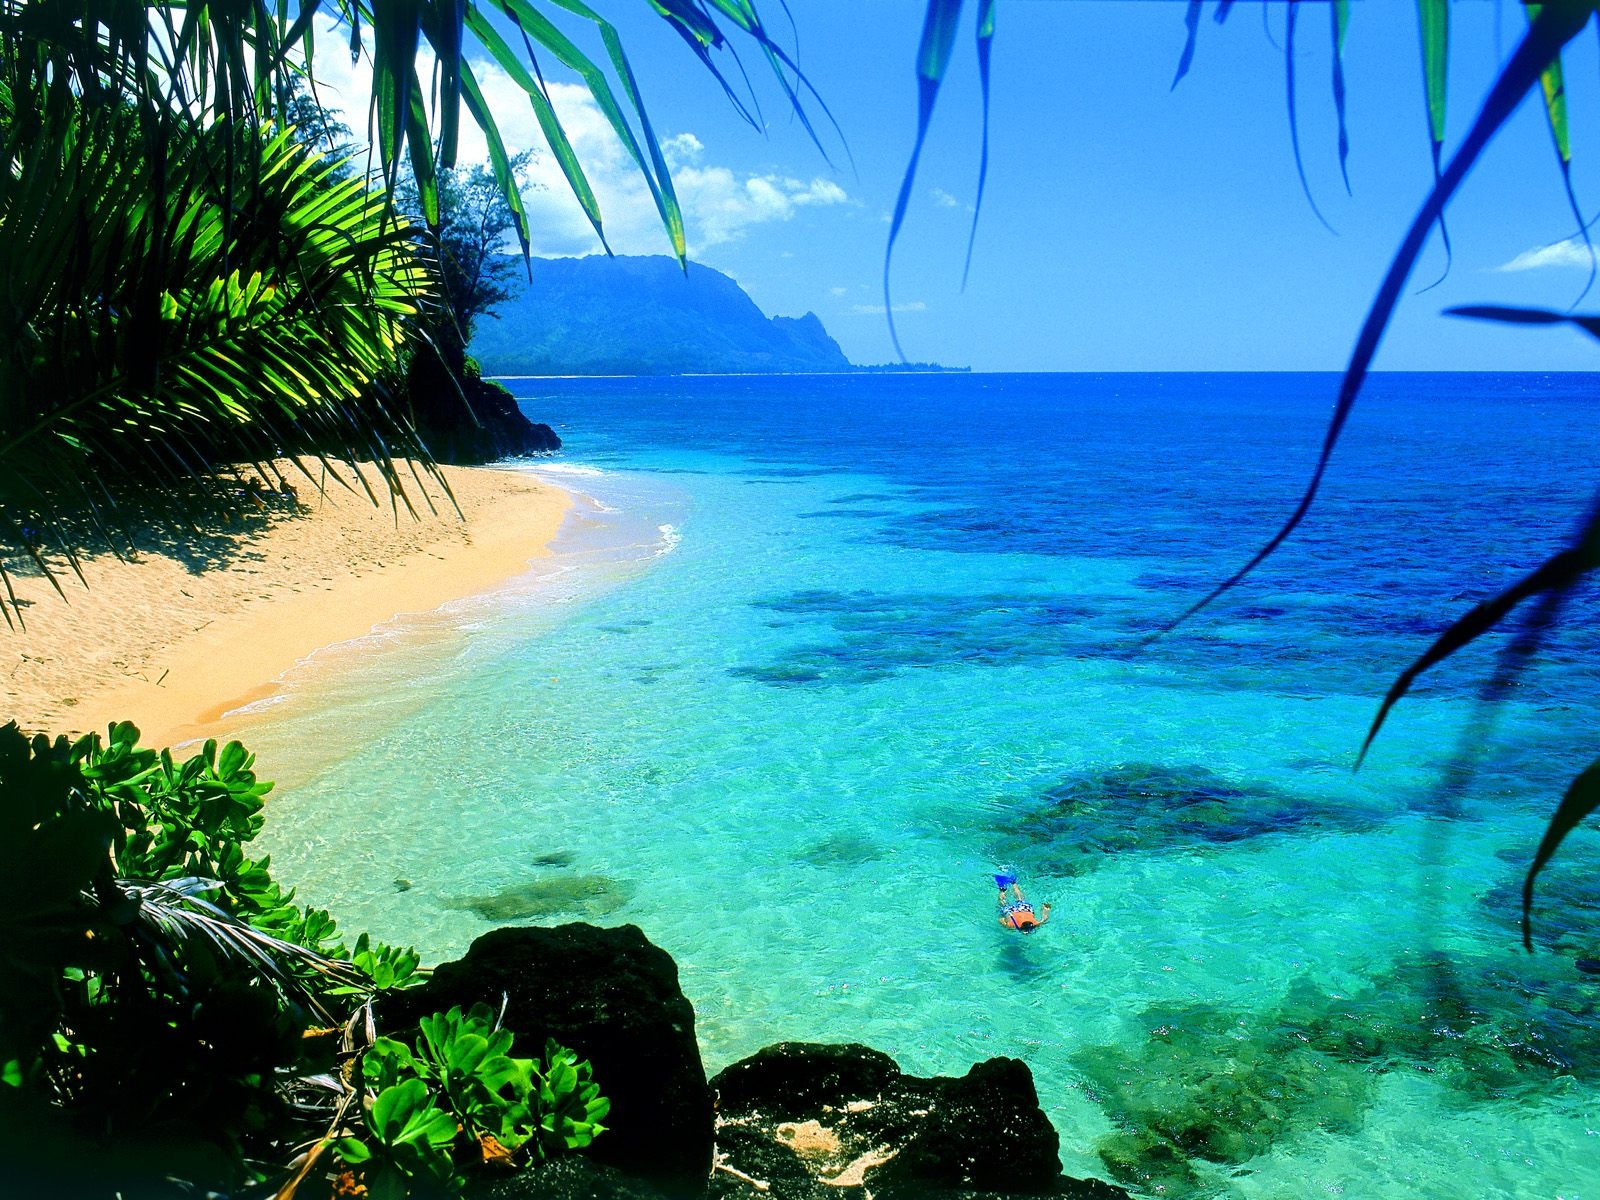 바탕 화면 하와이의 아름다운 풍경 39 1600x1200 배경 화면 다운로드 바탕 화면 하와이의 아름다운 풍경 풍경